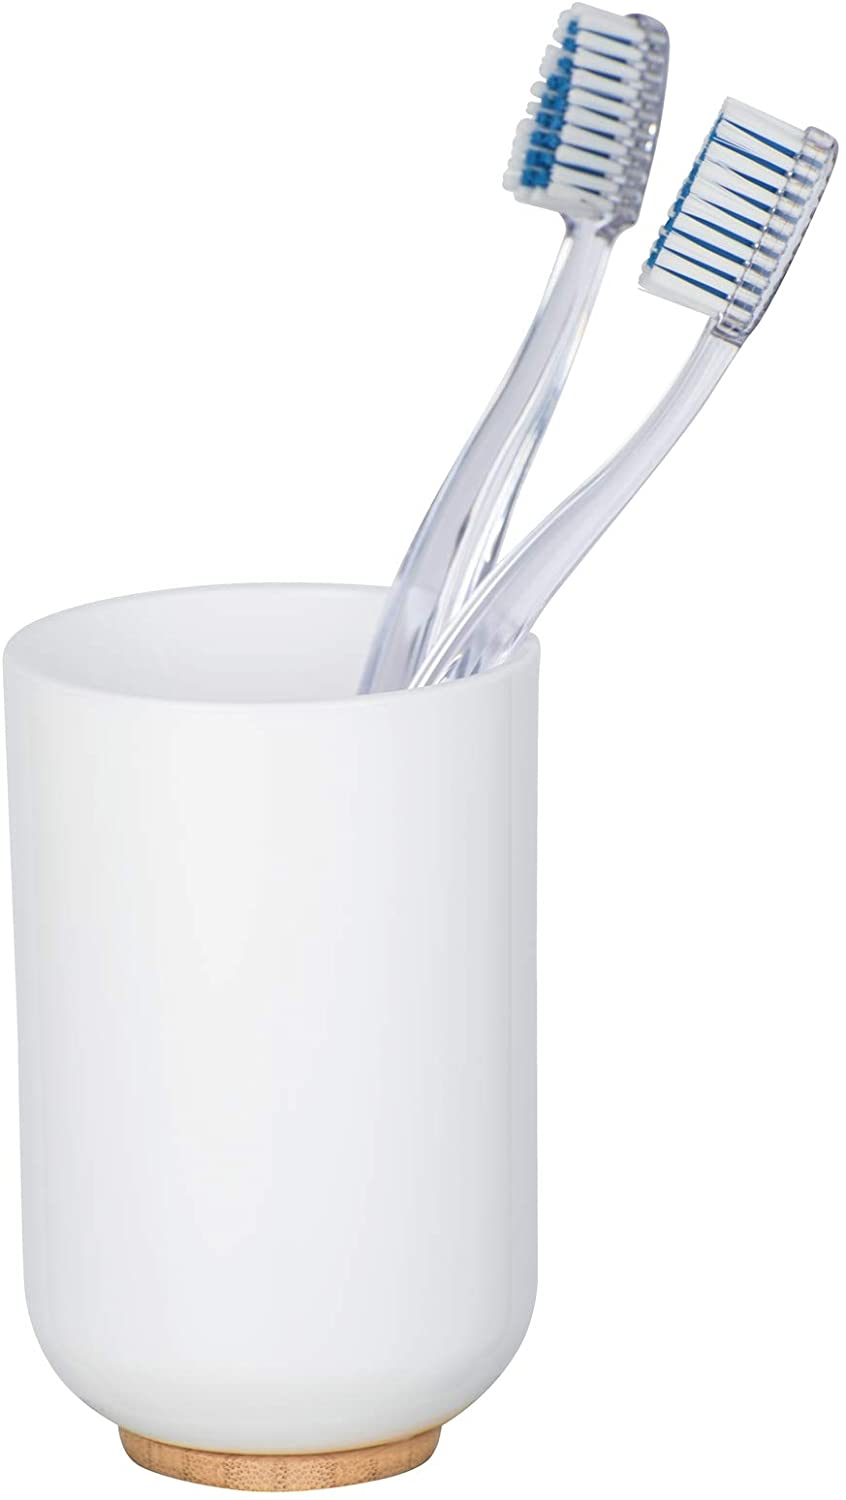 Zahnputzbecher Posa Weiß - Zahnbürstenhalter für und Zahnpasta, Kunststoff, 7 x 11 x 7 cm, Weiß